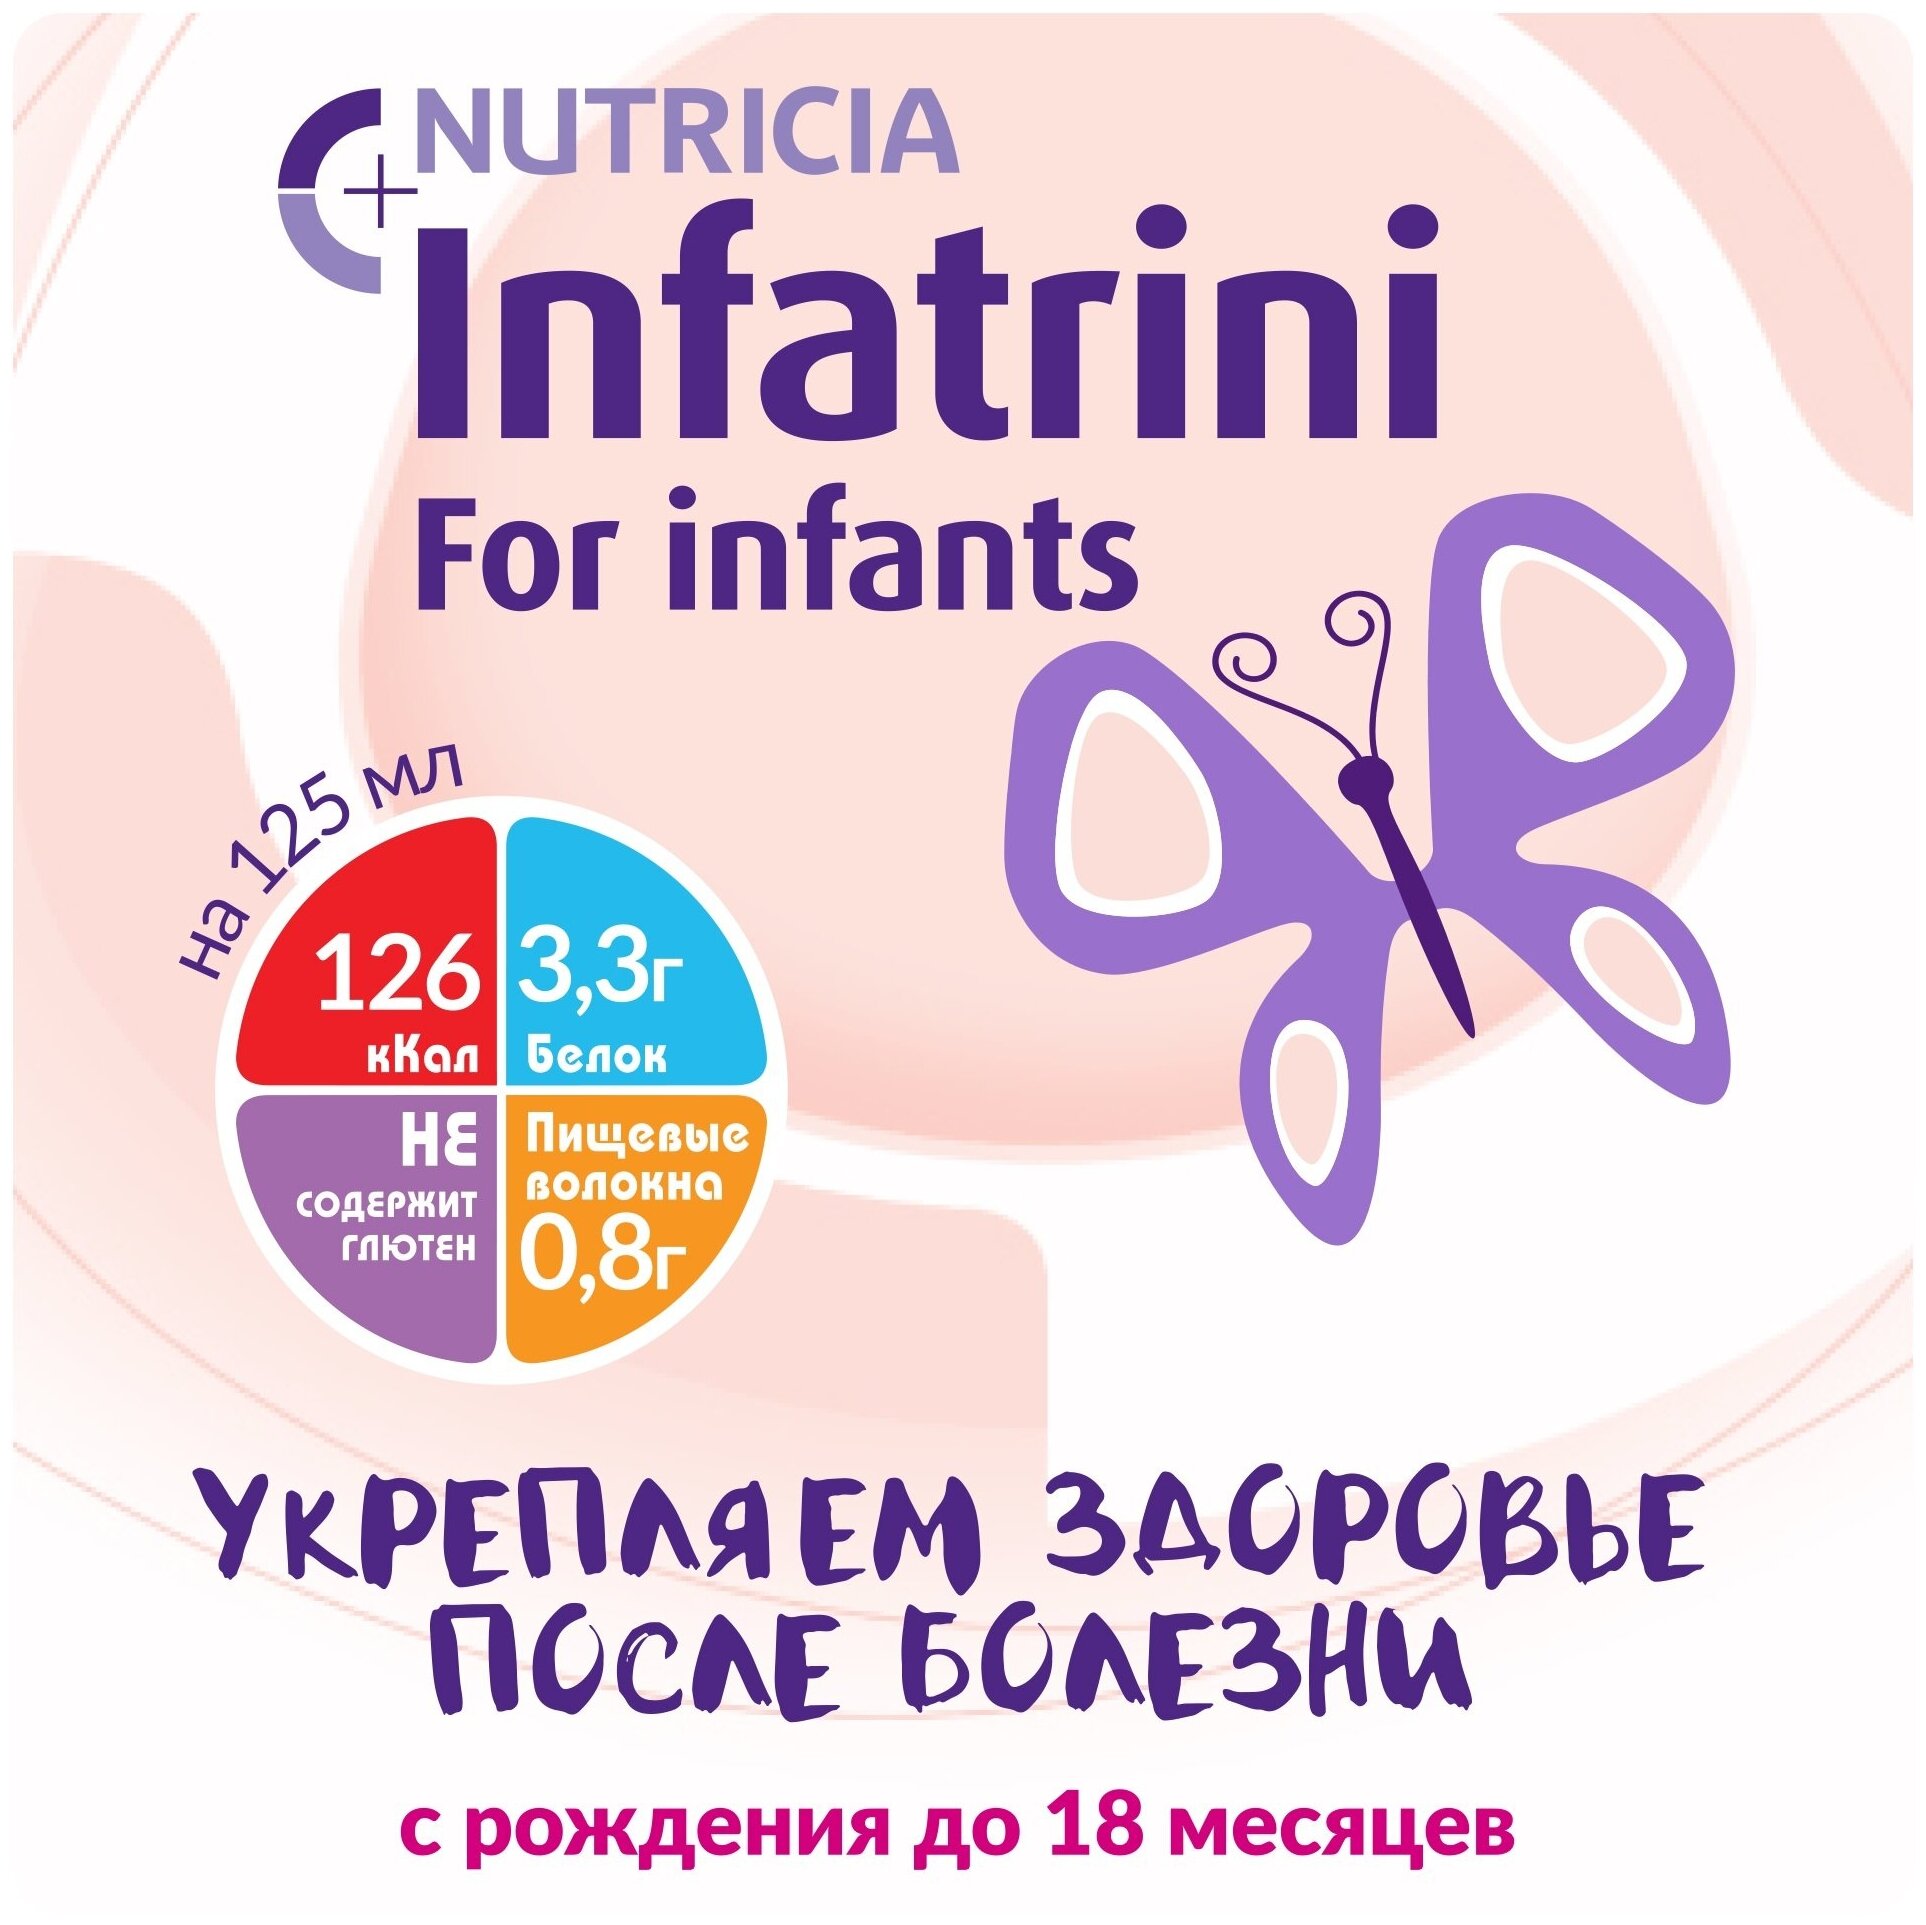 Жидкая высокобелковая смесь Nutricia Инфатрини, 125мл - фото №2